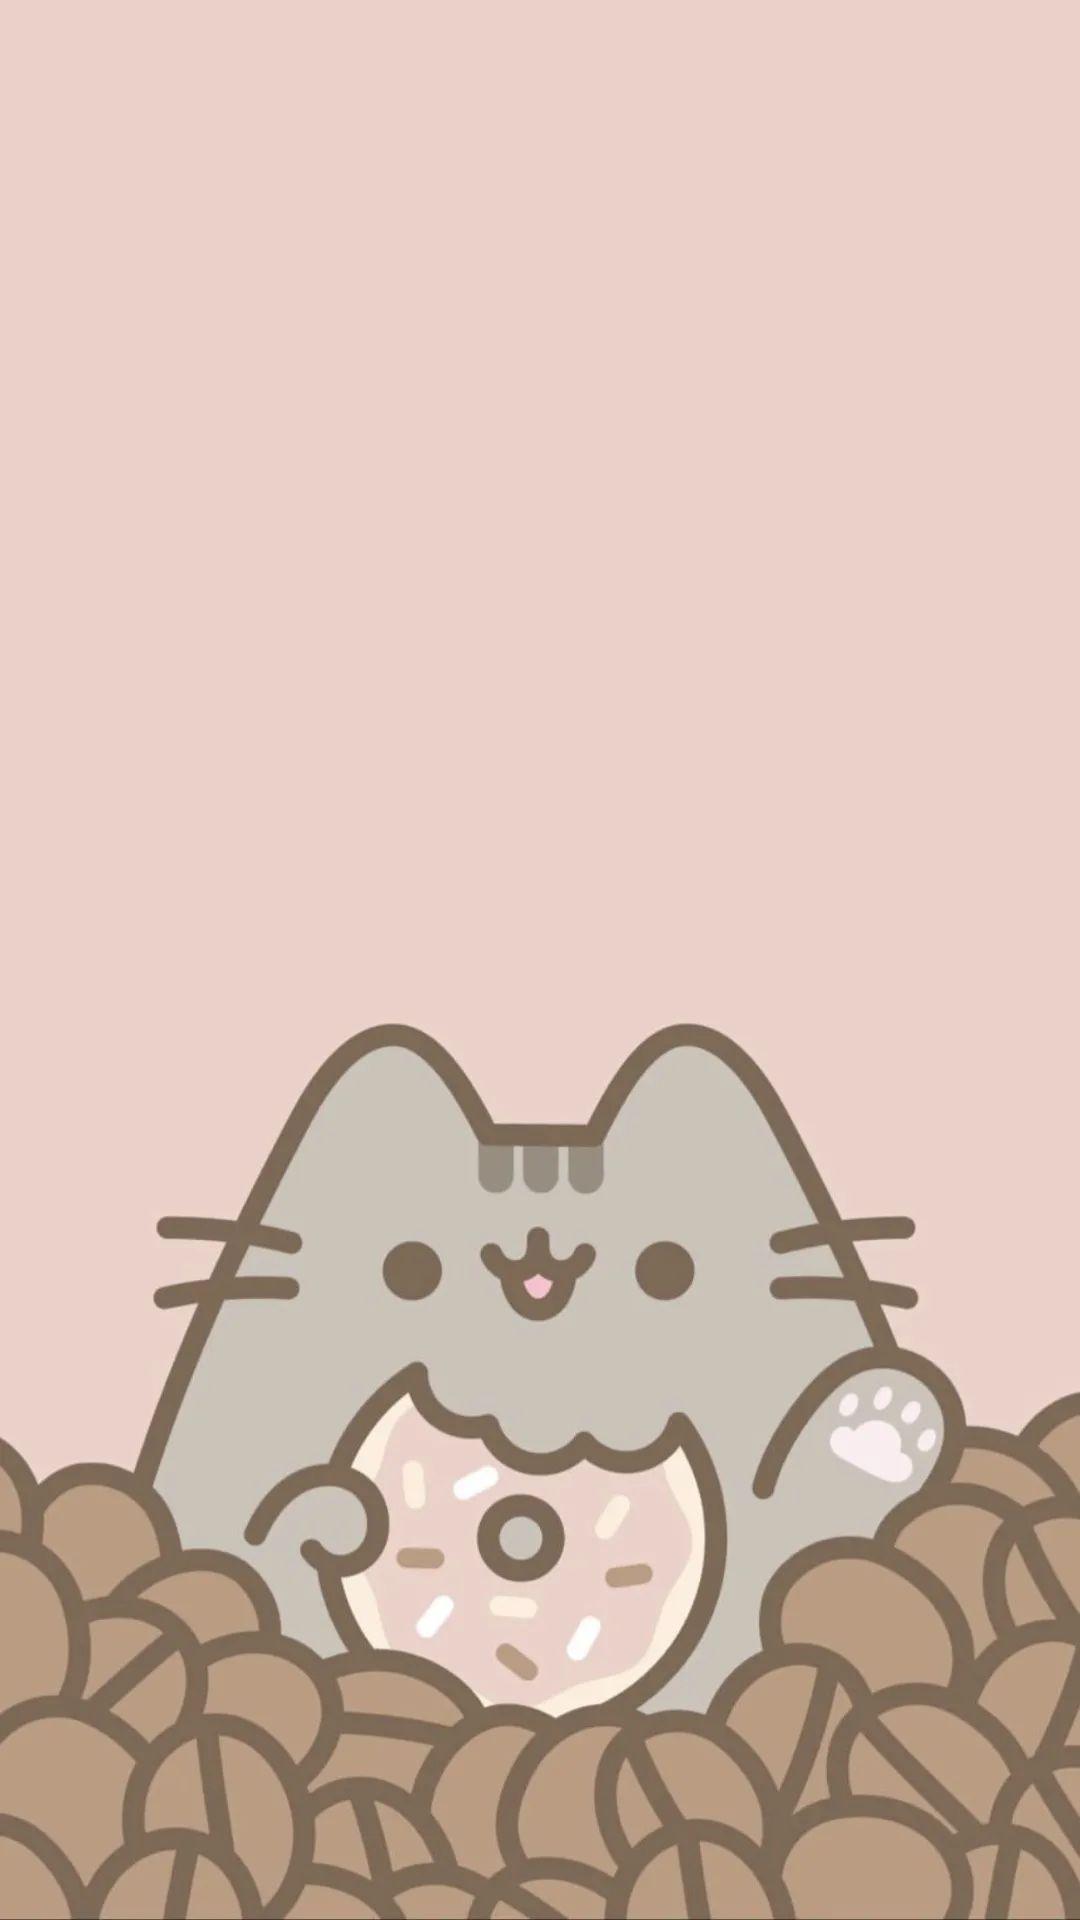 呆萌模样让人受不了张超可爱胖吉猫主题手机壁纸好想可以吸猫啊